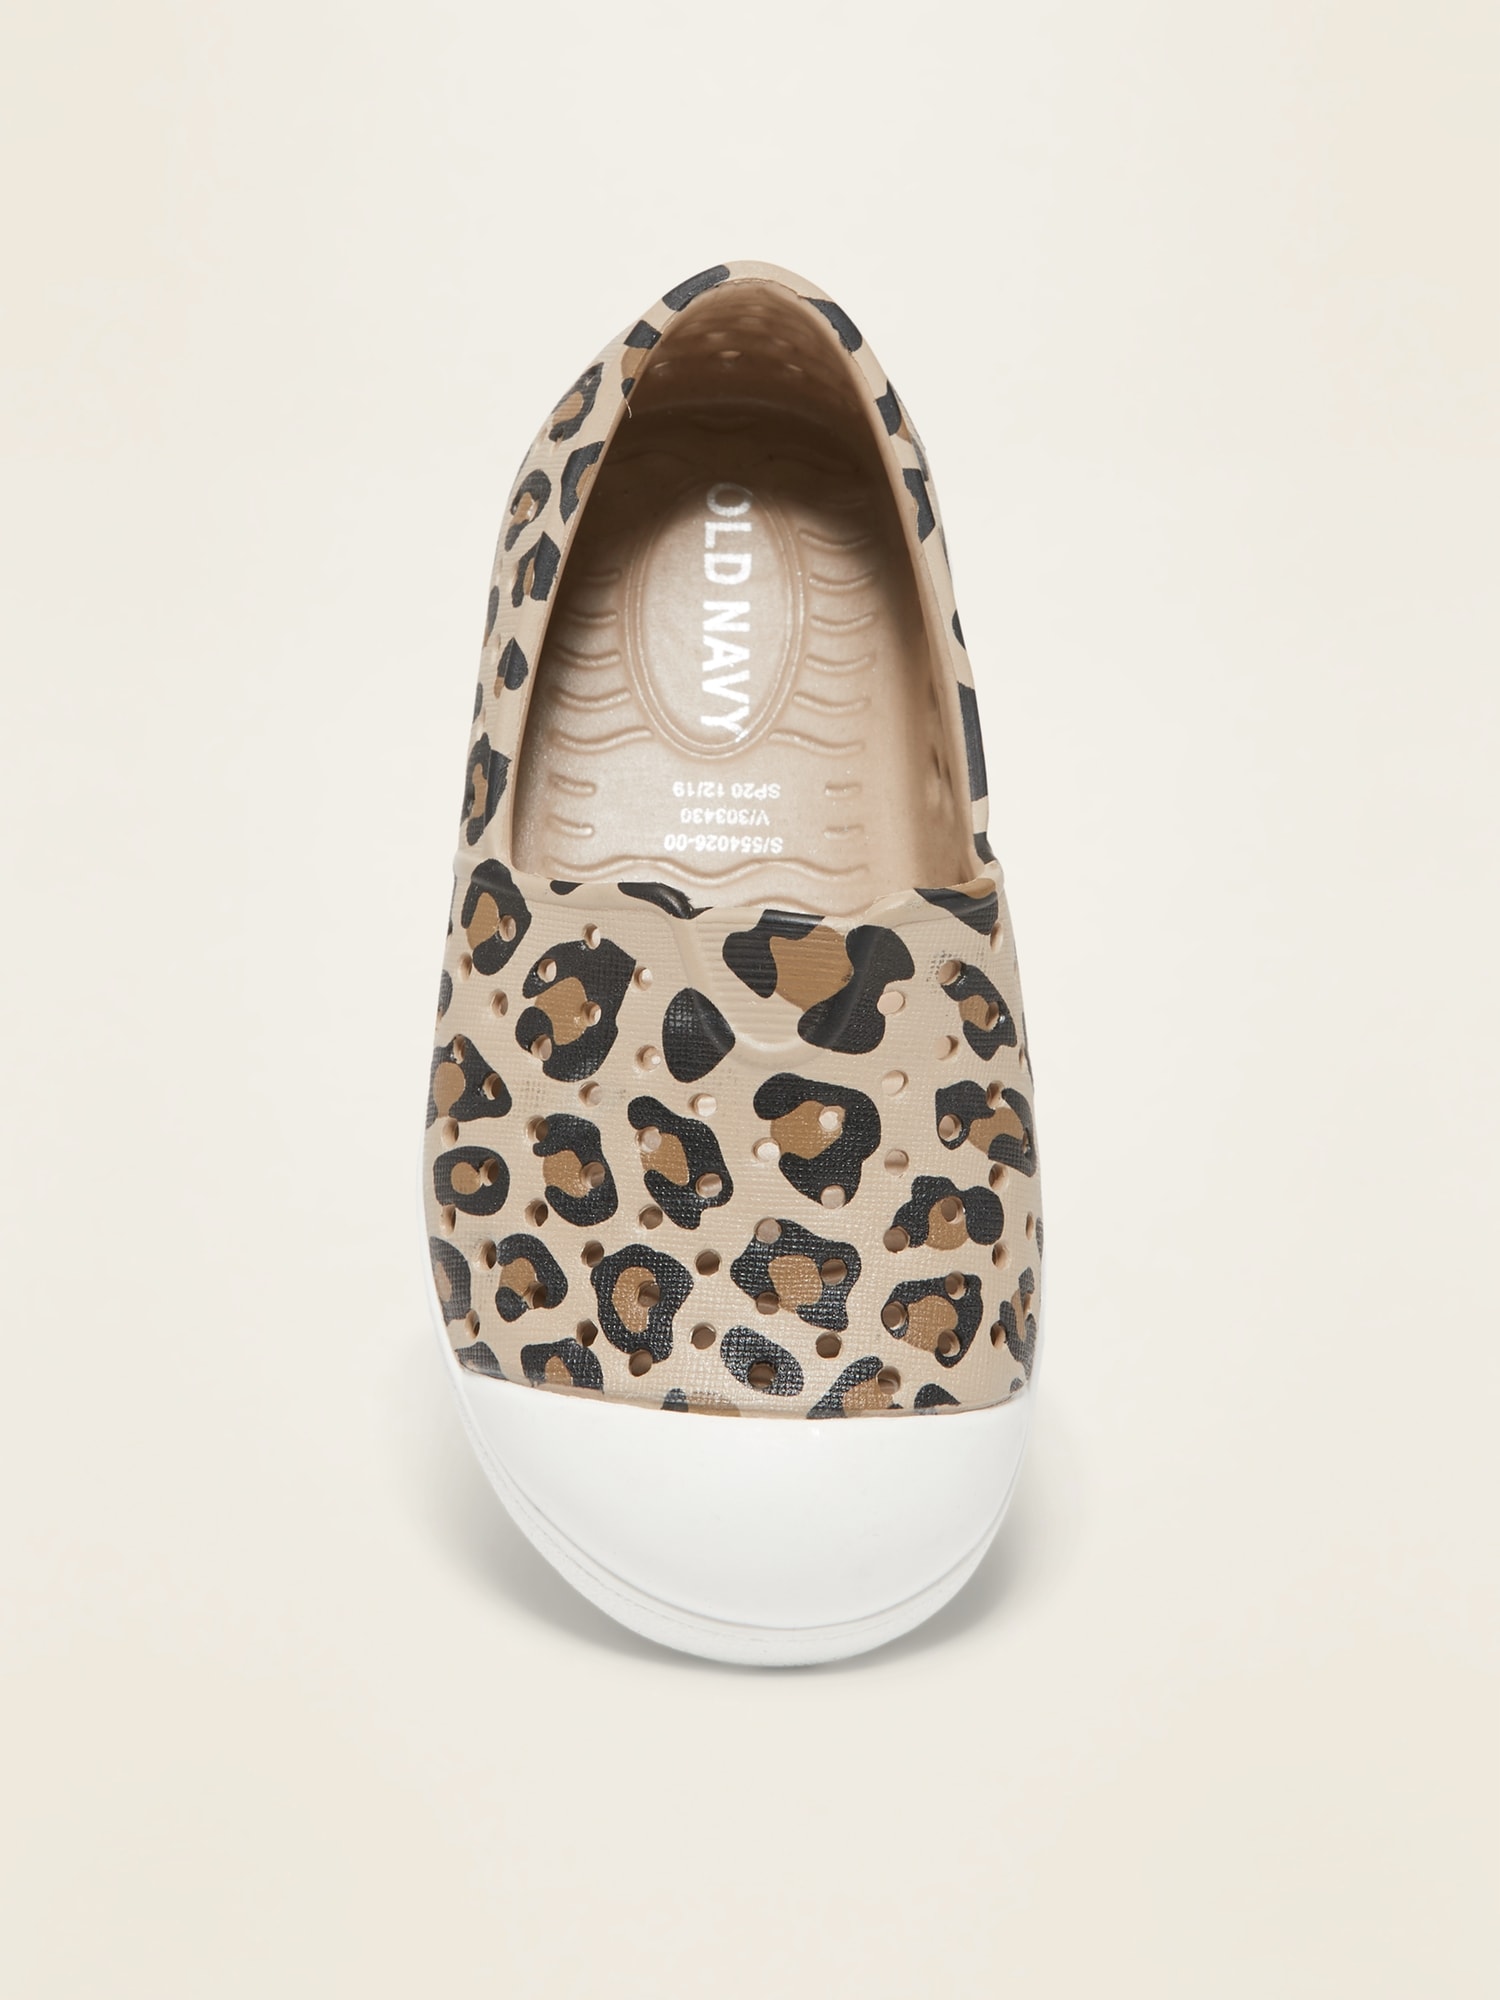 leopard slip on sneakers gap